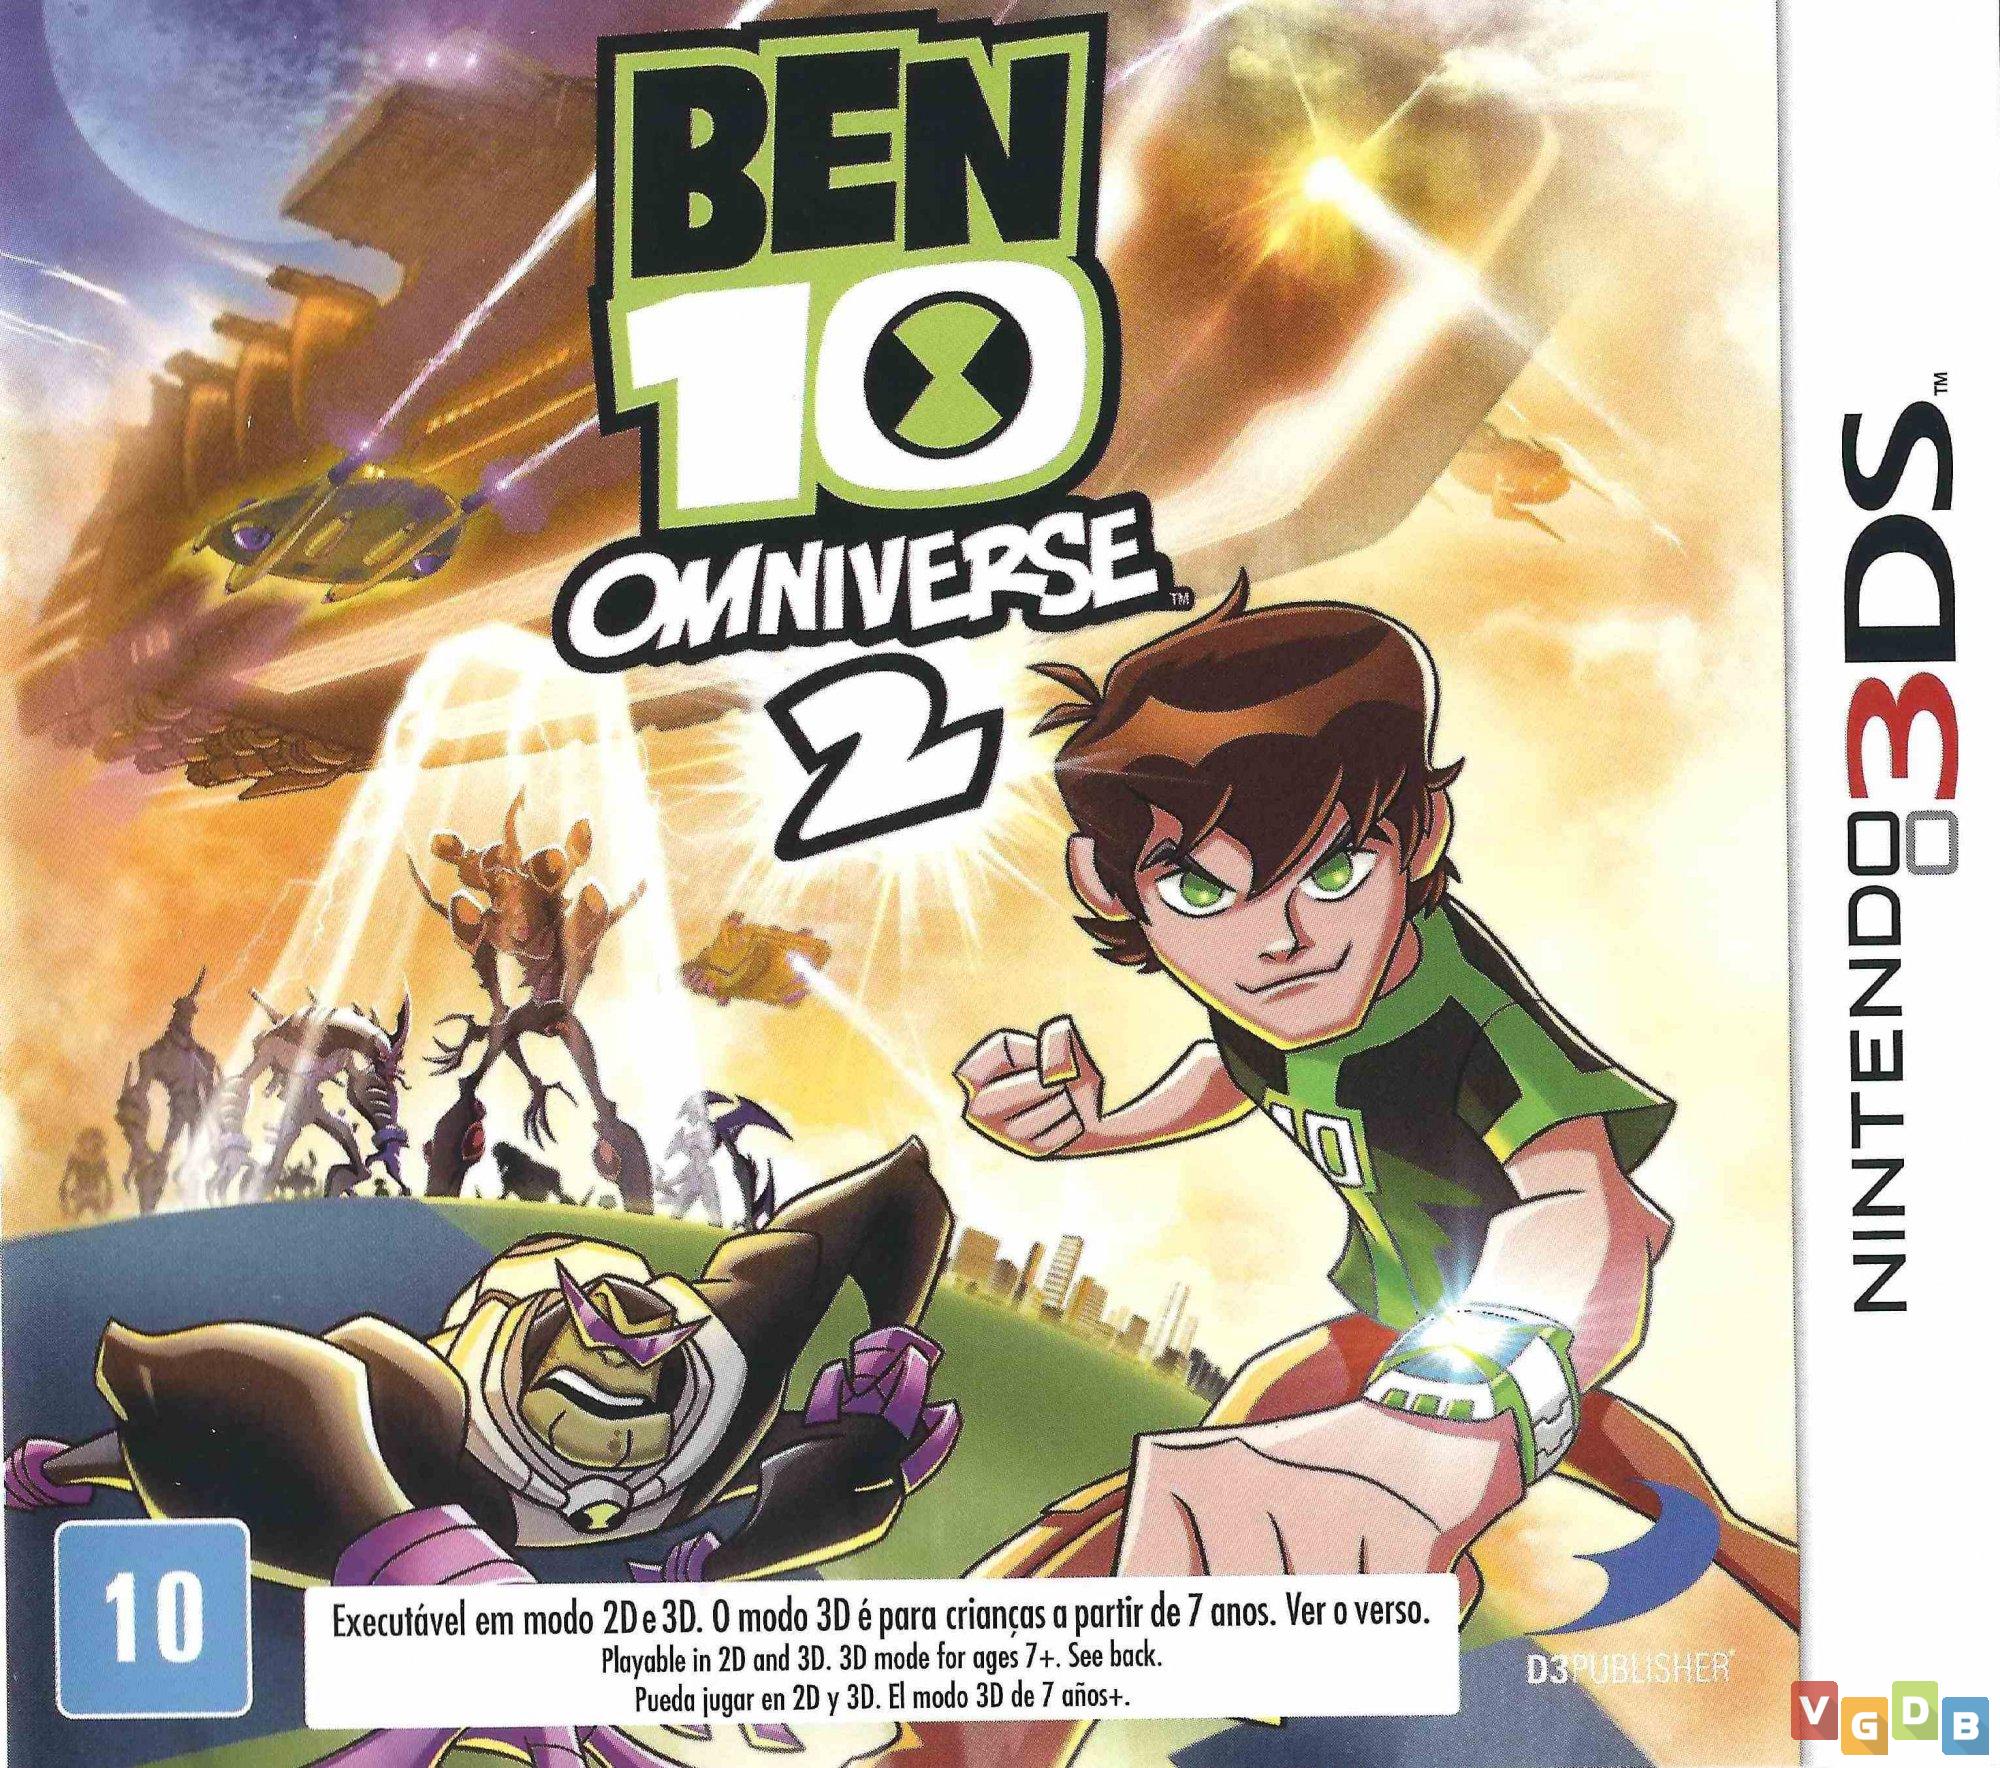  Ben 10 Omniverse 2 - Nintendo Wii U : D3 Publisher of